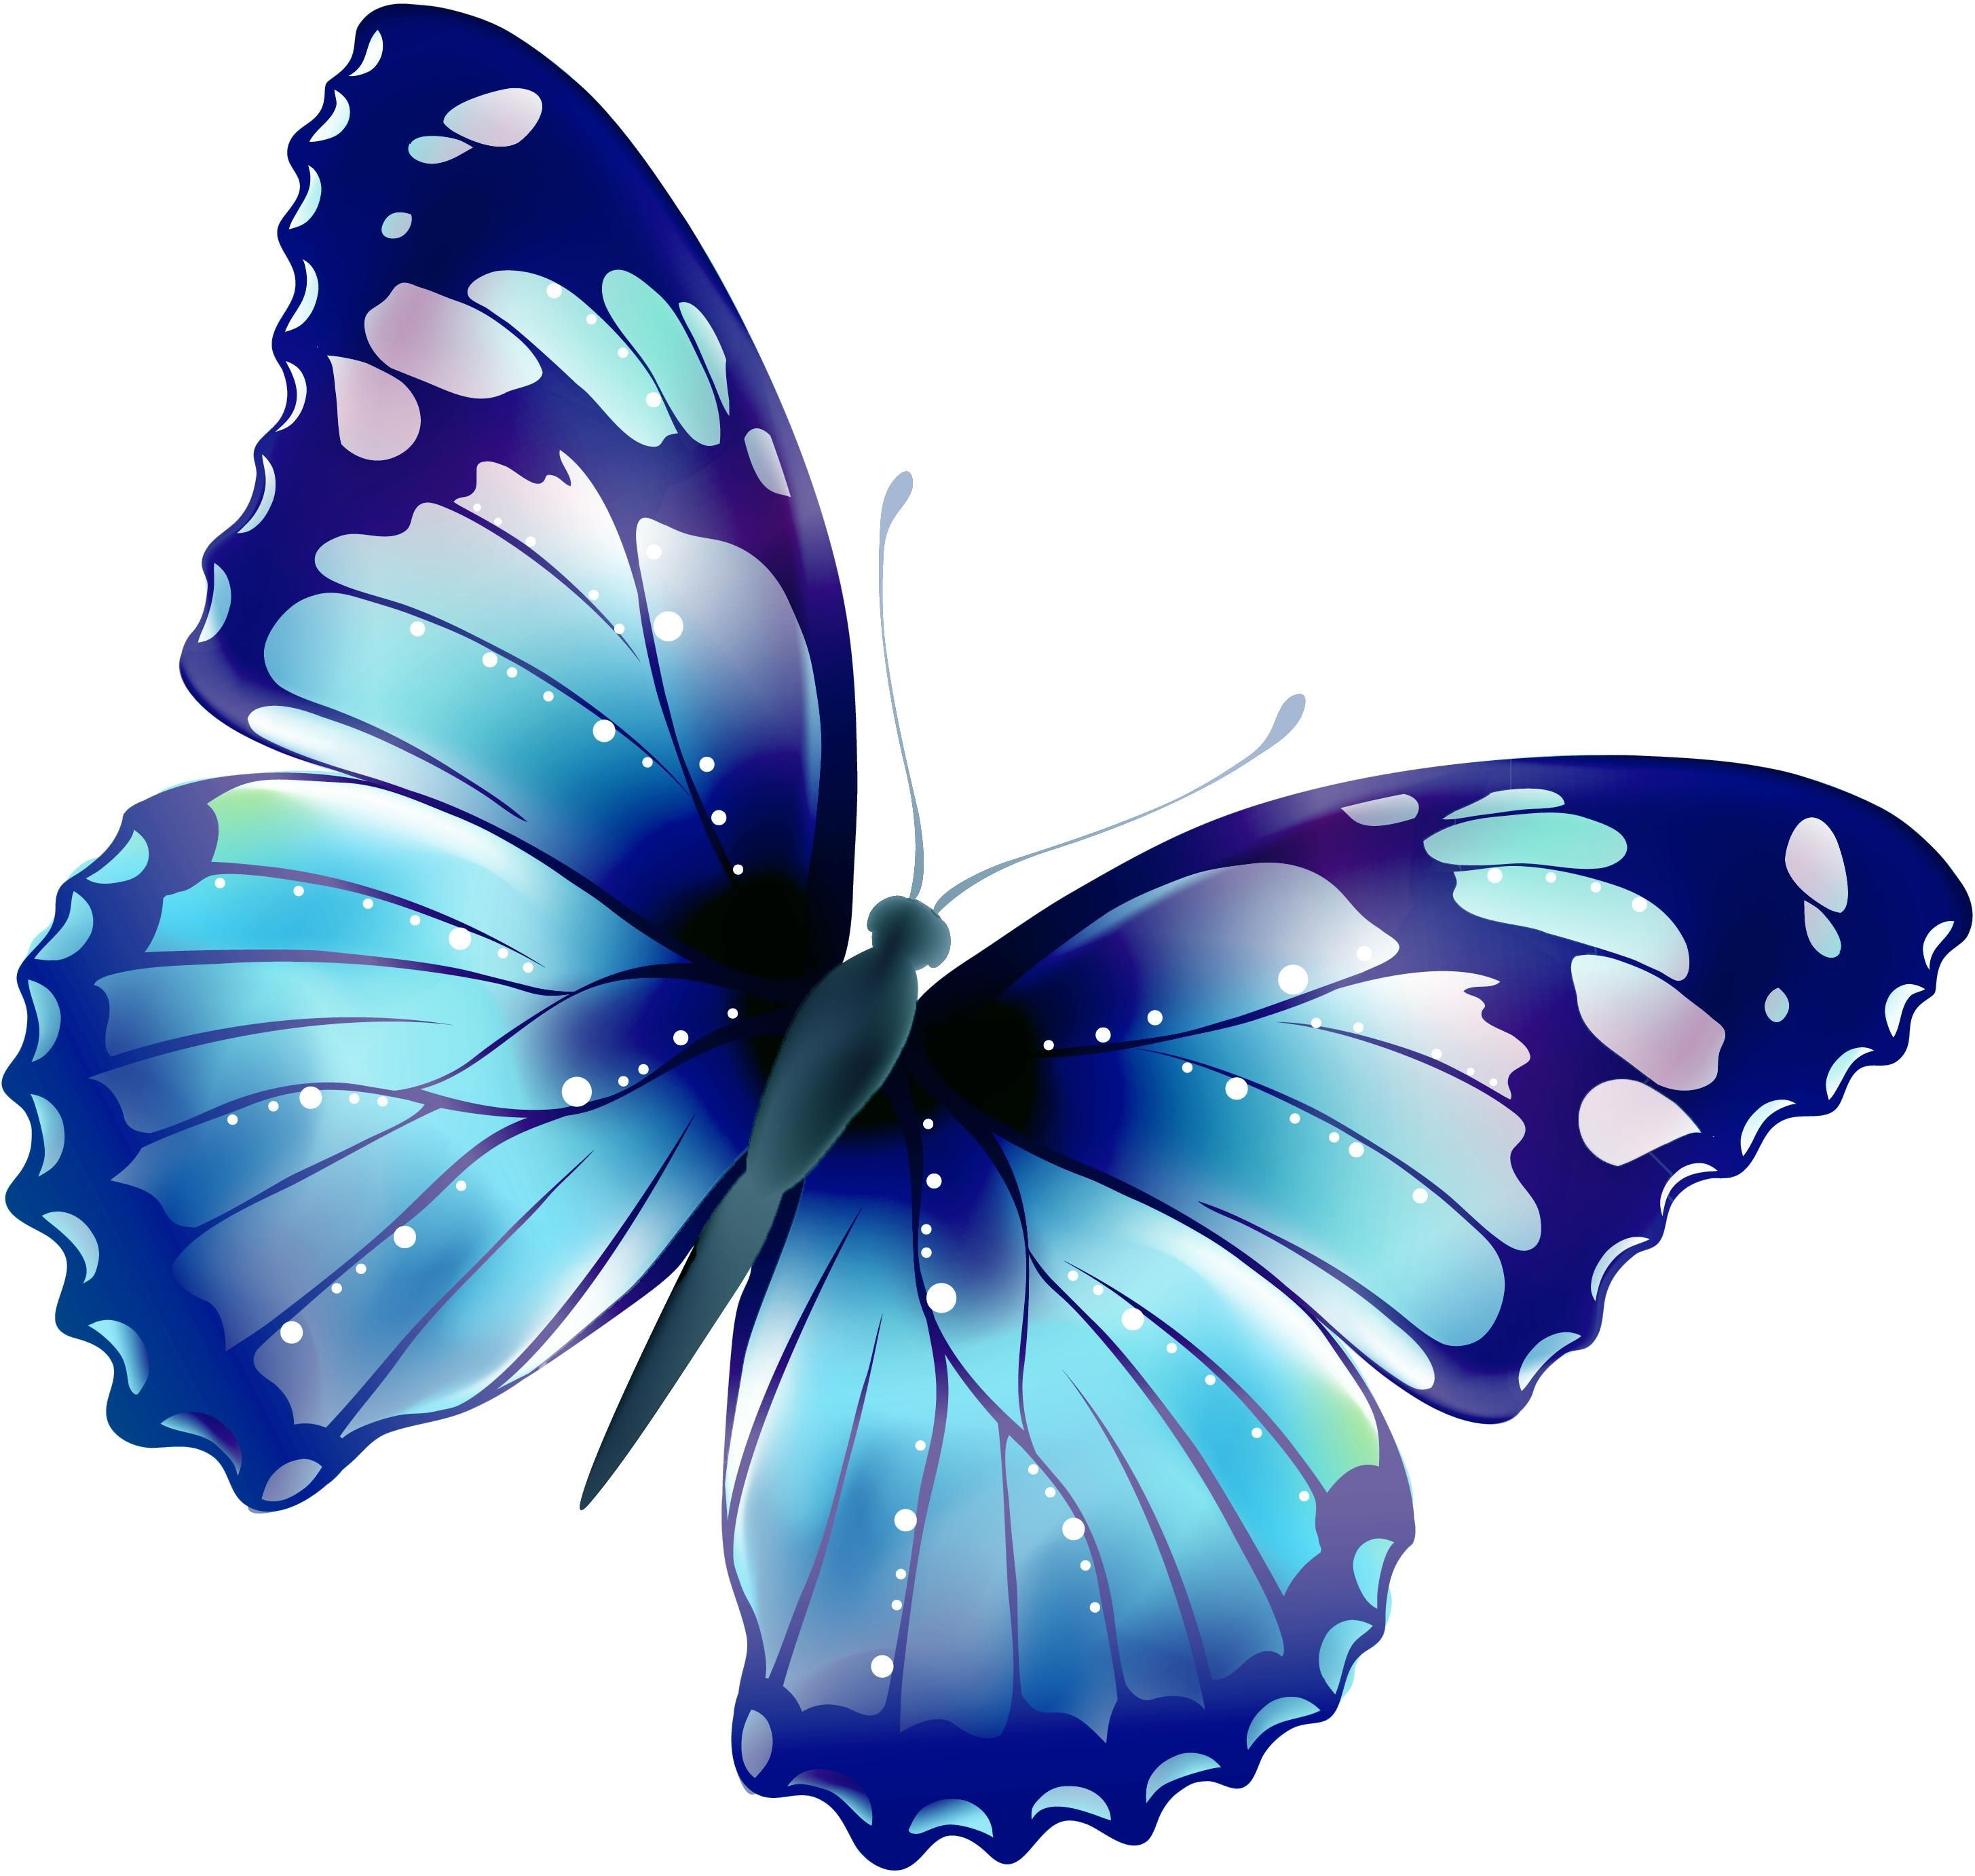 Голубая бабочка рисунок